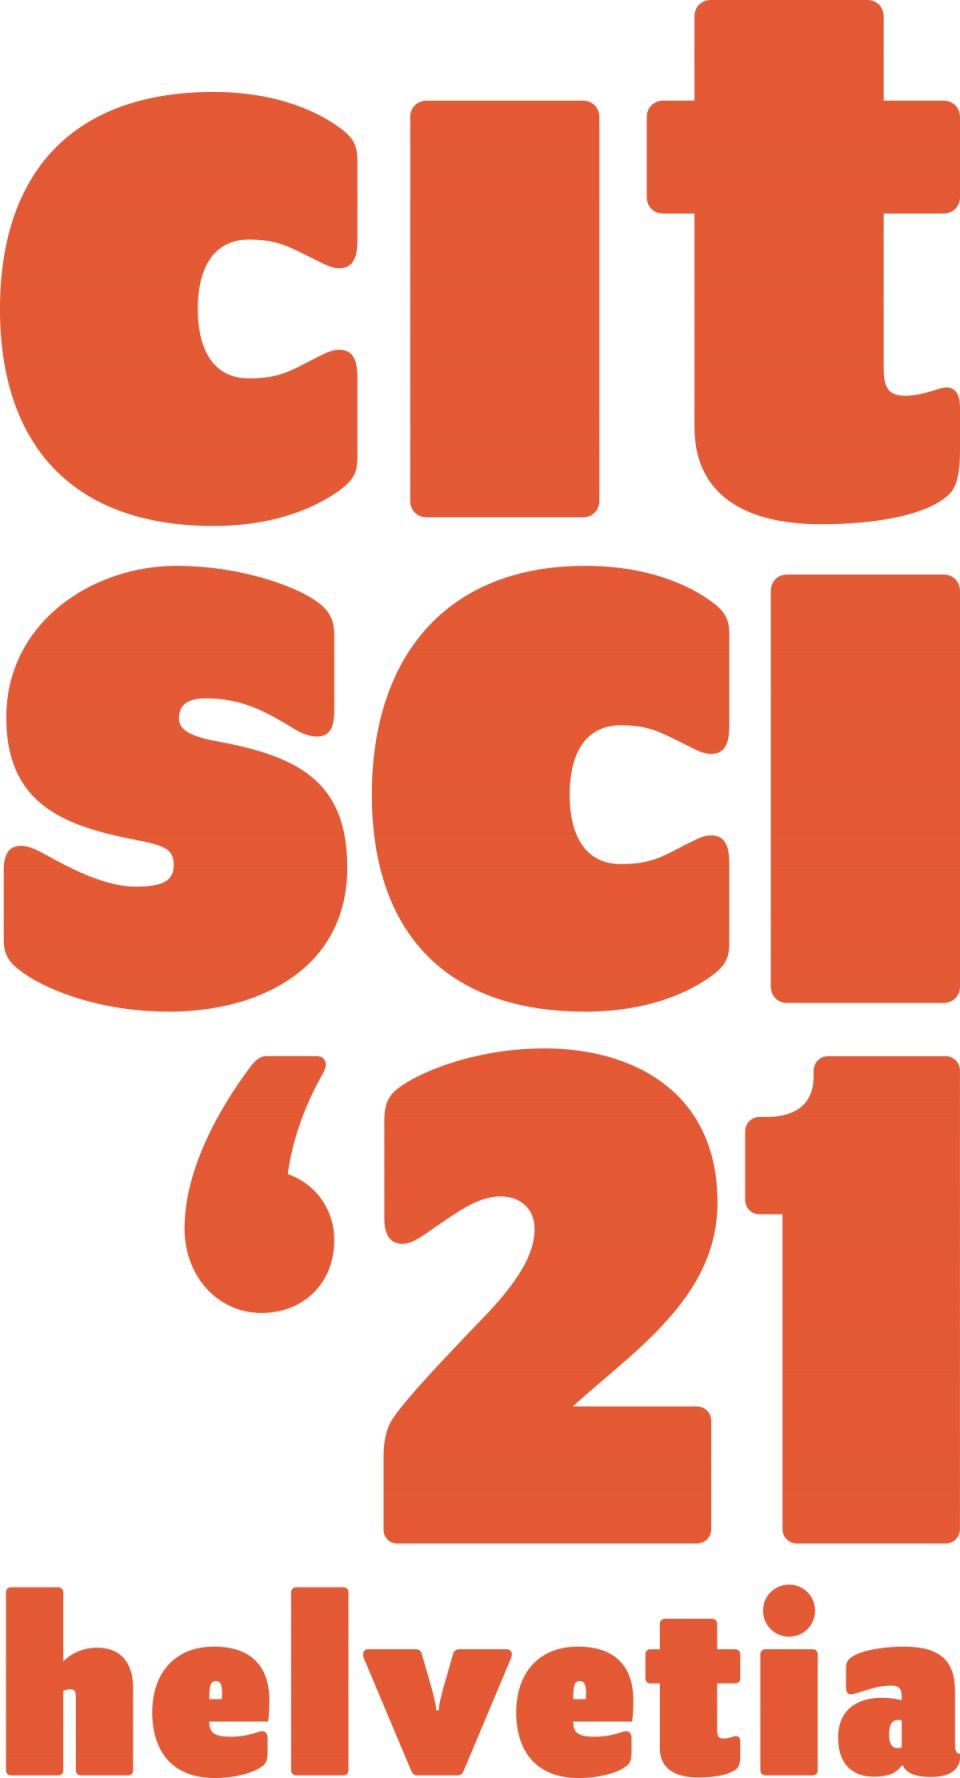 CitSciHelvetia'21 - Citizen Science in der Schweiz vernetzen